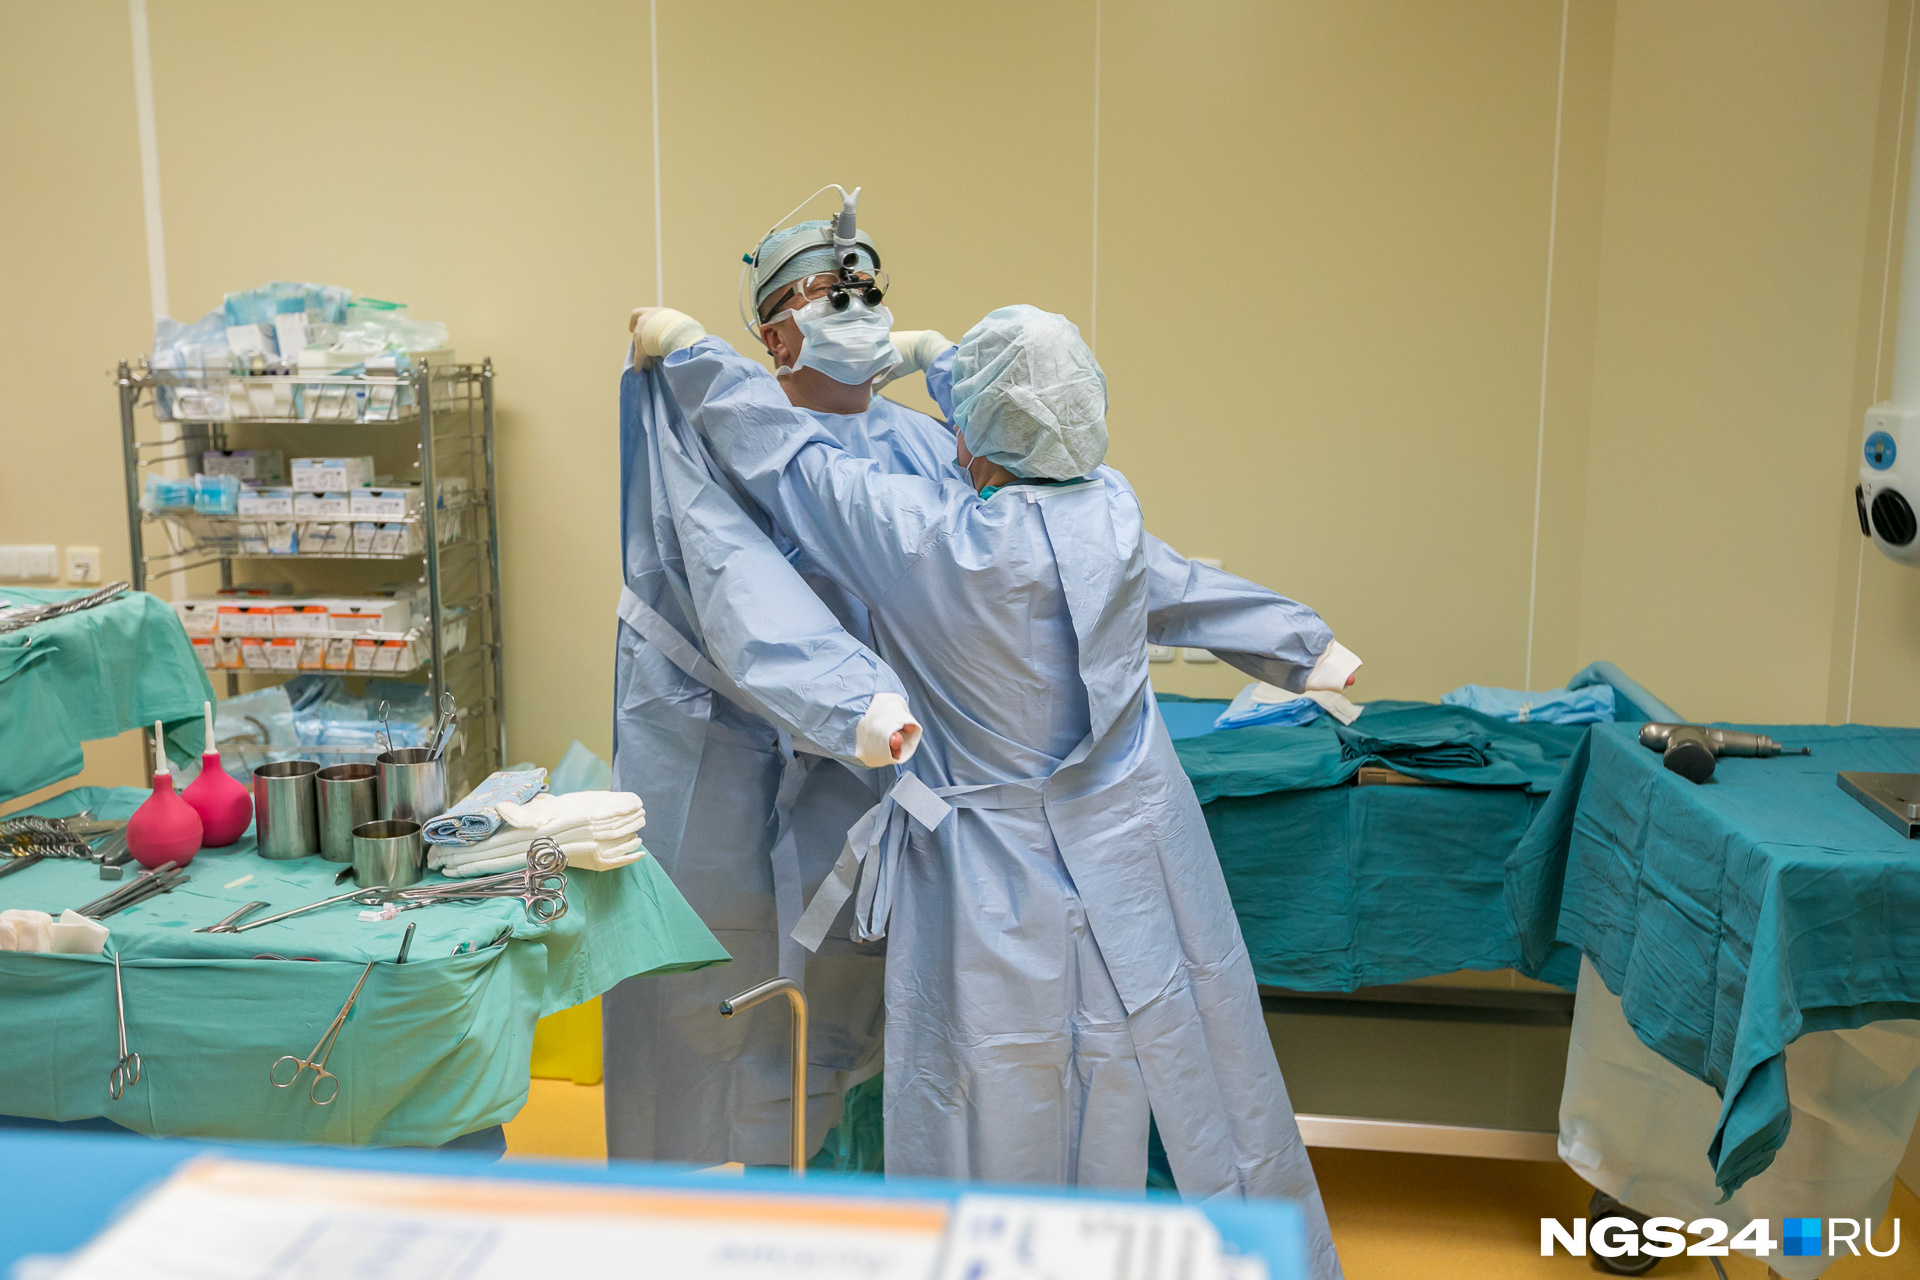 Подходить к кардиохирургу сейчас может только операционная медсестра. На доктора надевают стерильный халат, и он приступает к операции. 